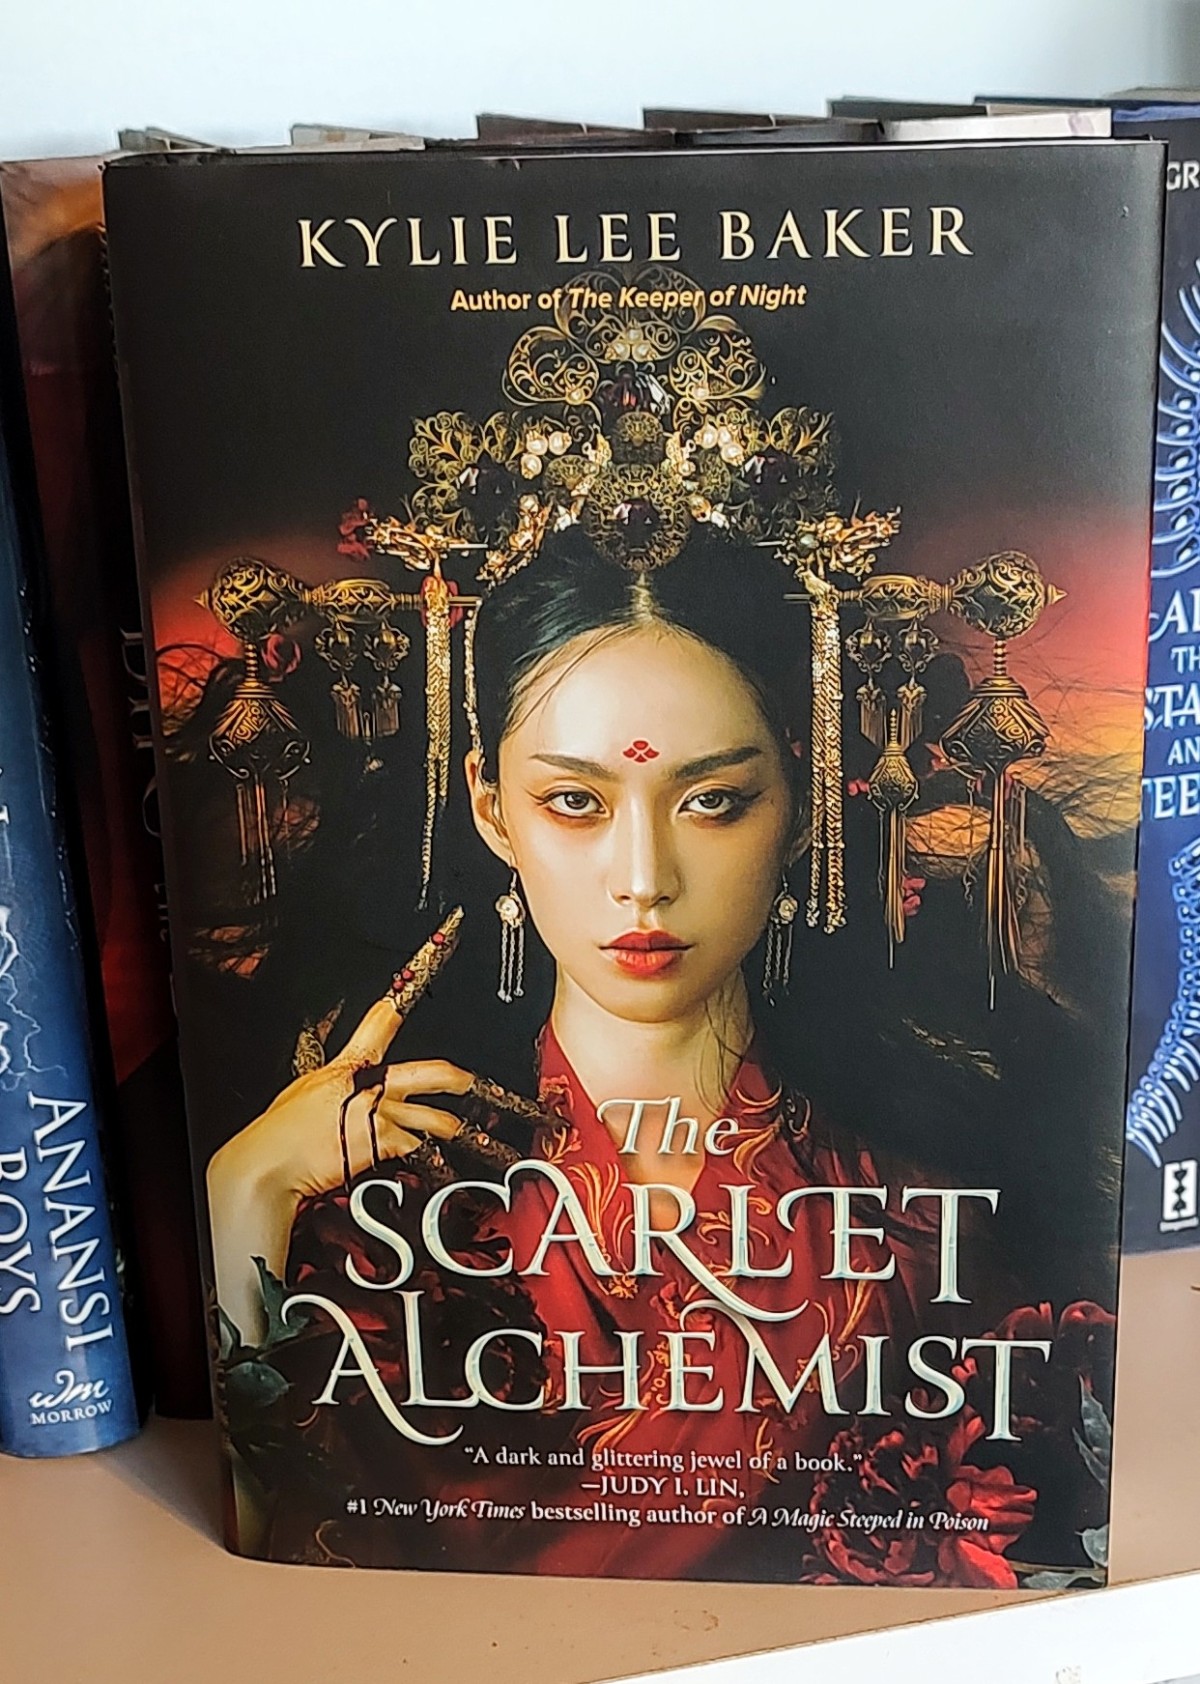 Killer Alchemist: Assassinations in Another World (Light Novel